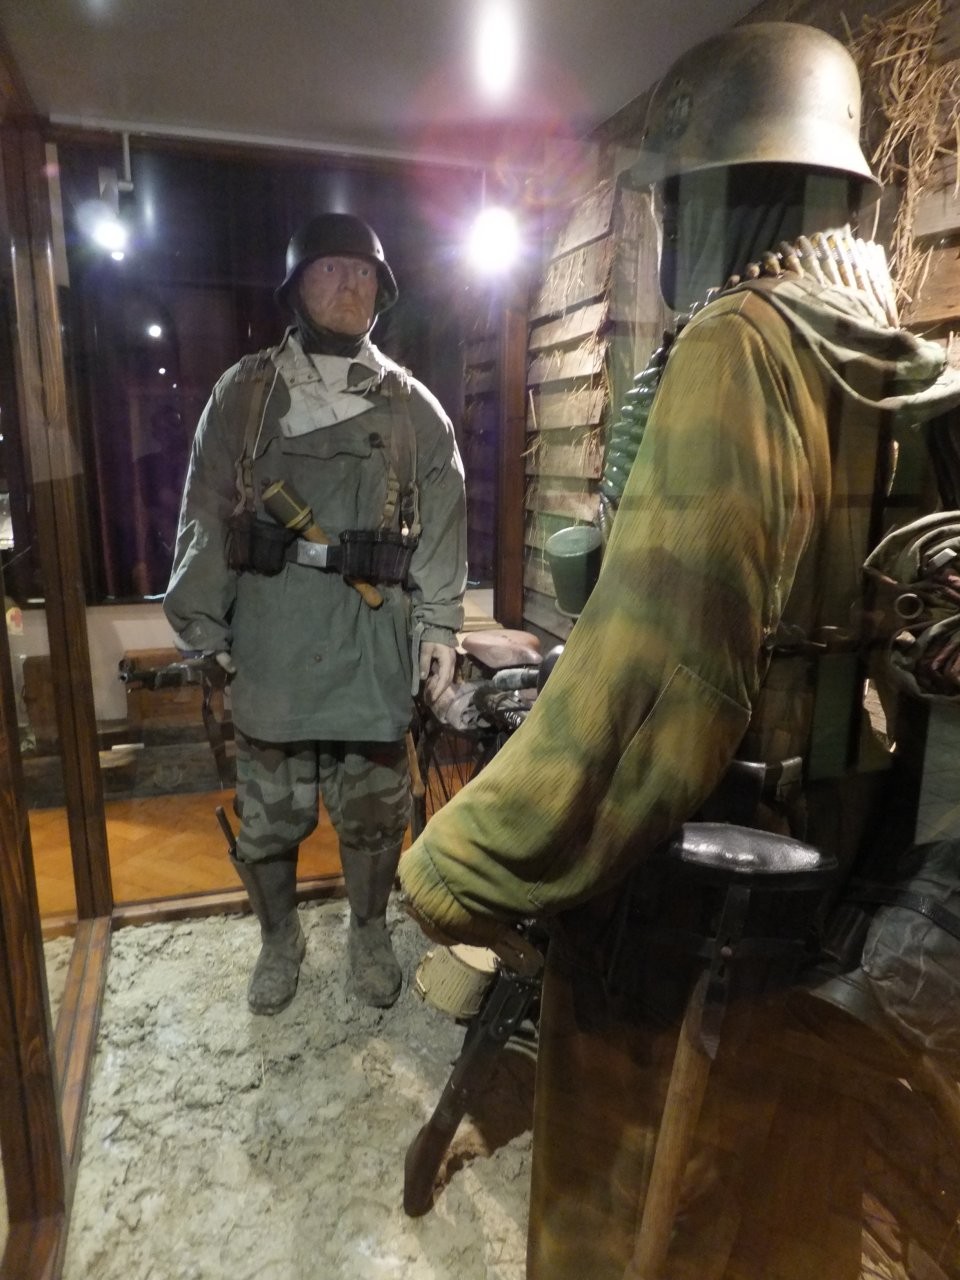 The 101st Airborne Museum Bastogne